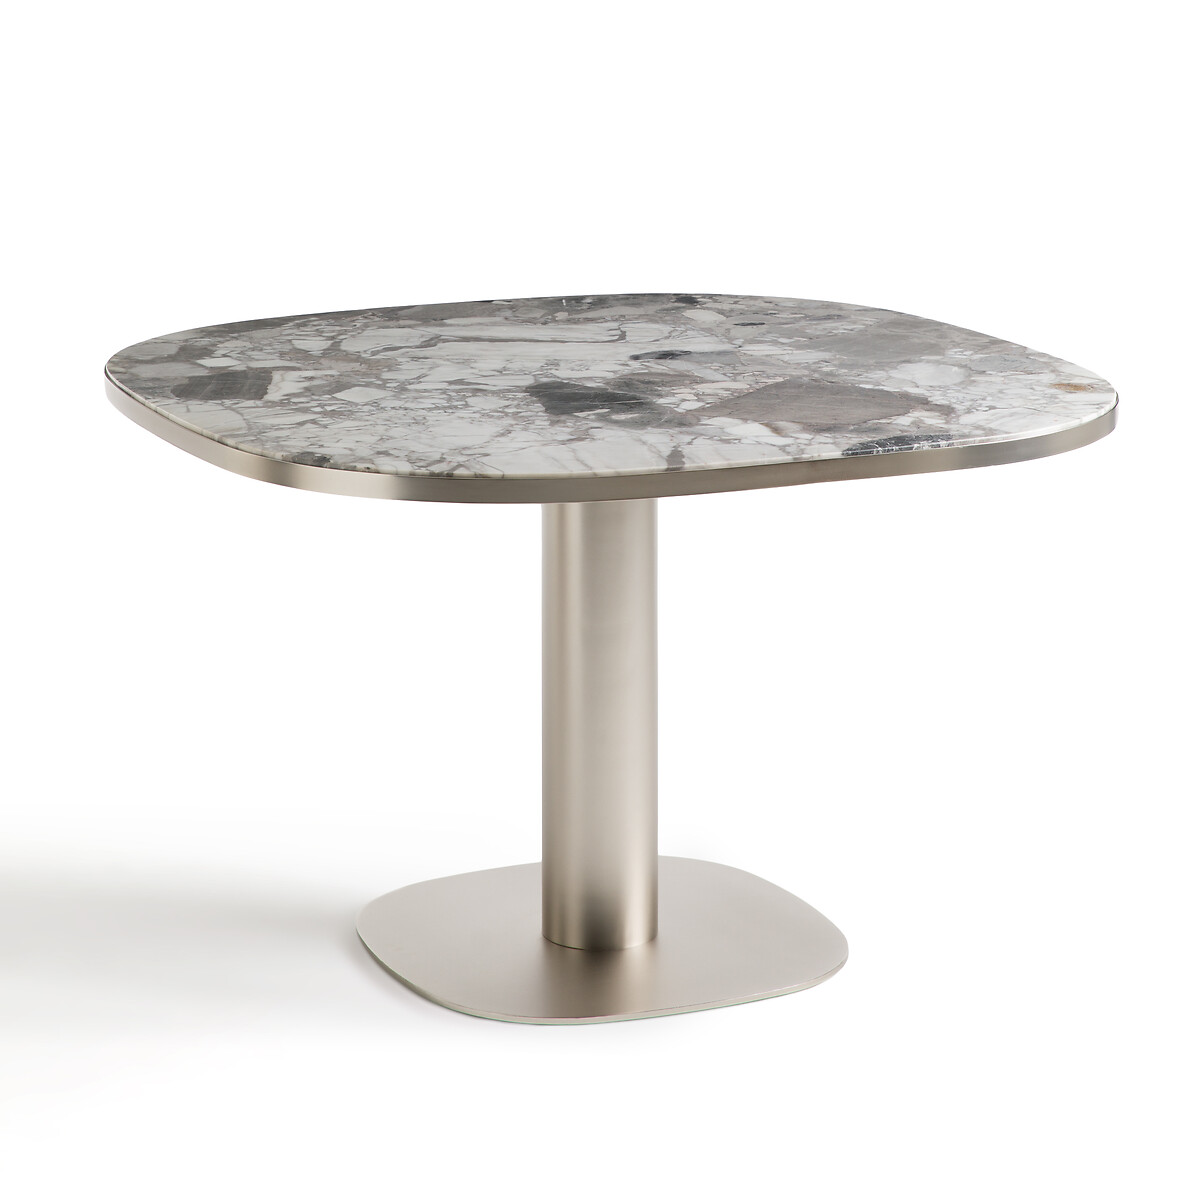 Стол обеденный из серого мрамора Lixfeld на 6 персон серый стол из мрамора 140 см dolmena на 8 персон черный